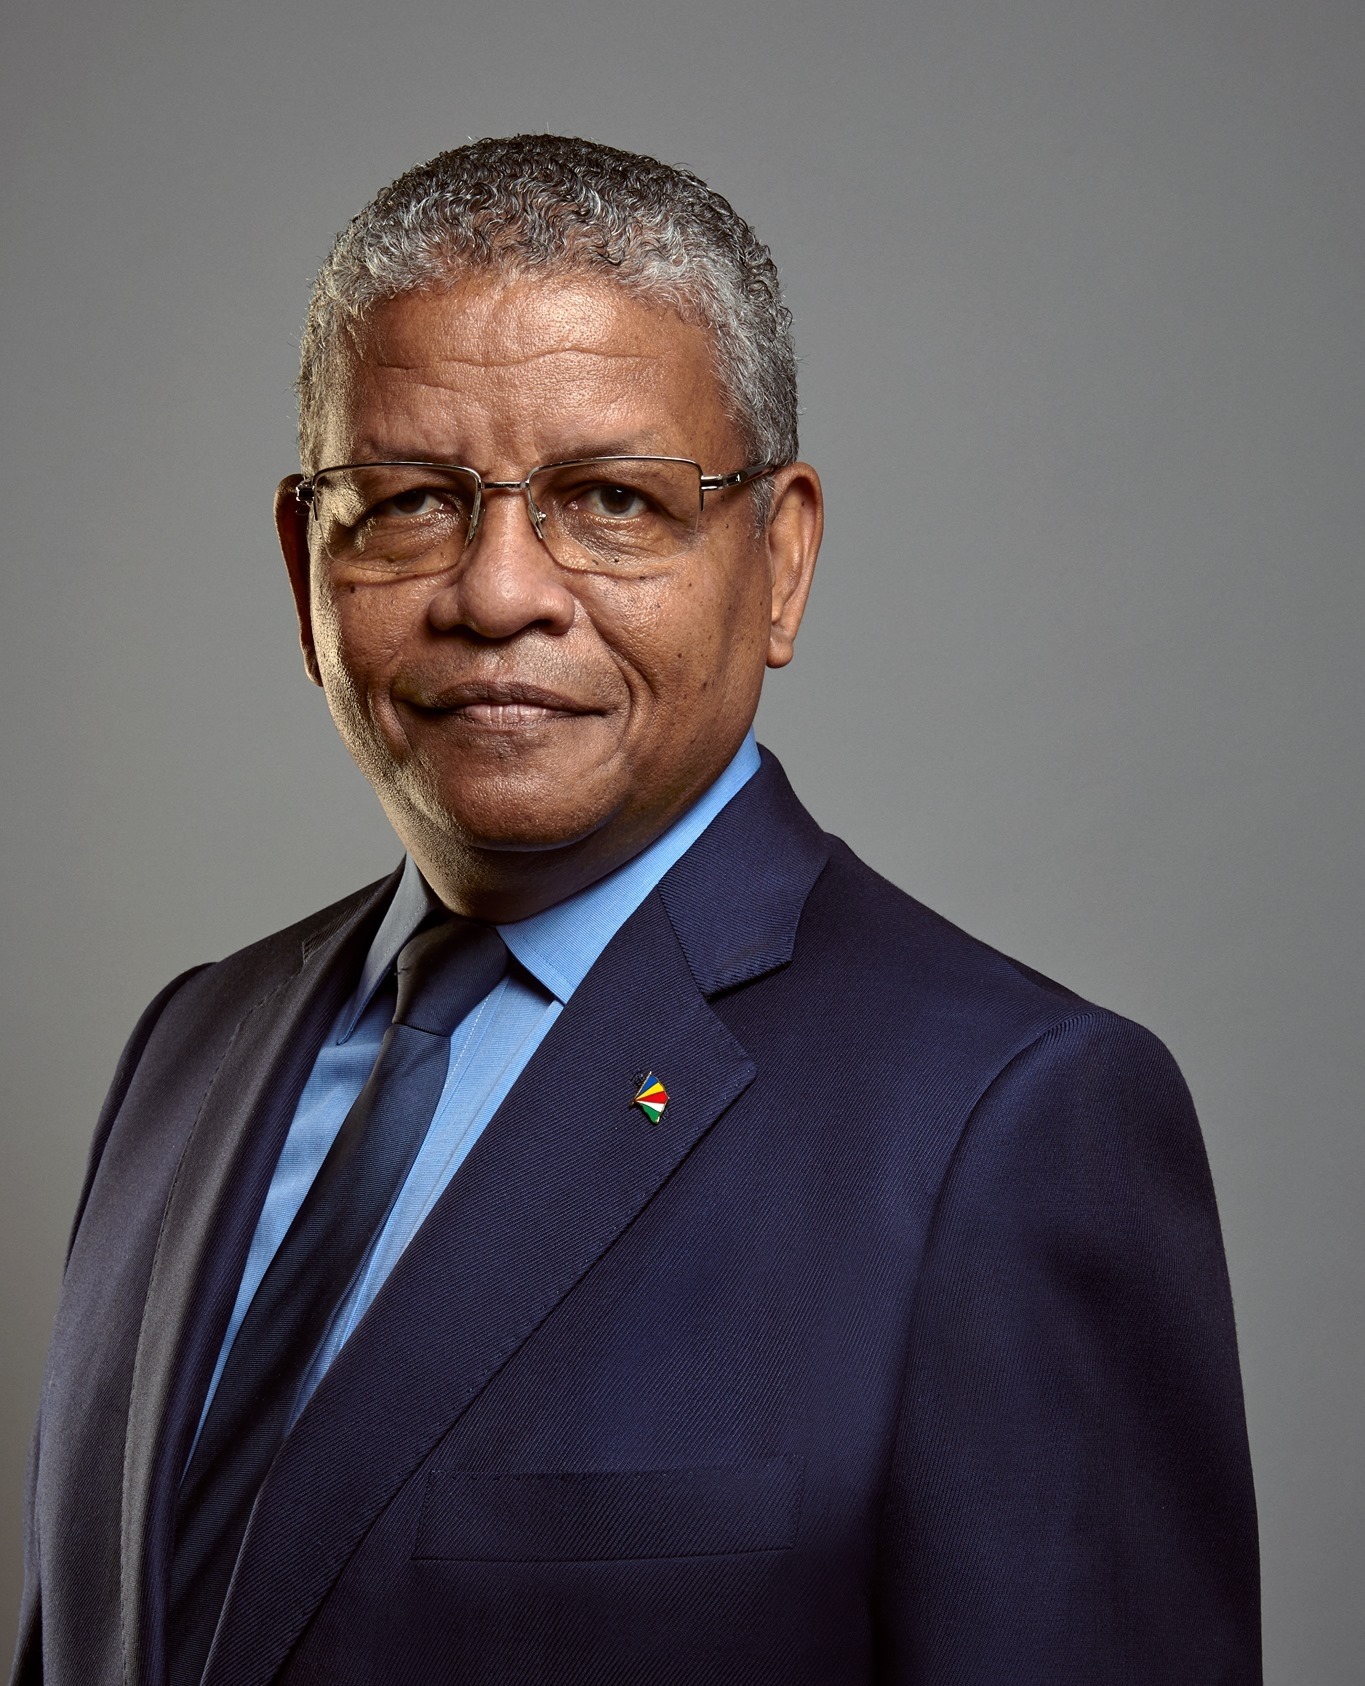 Вавел Рамкалаван, новый и 5-й президент Сейшельских островов.